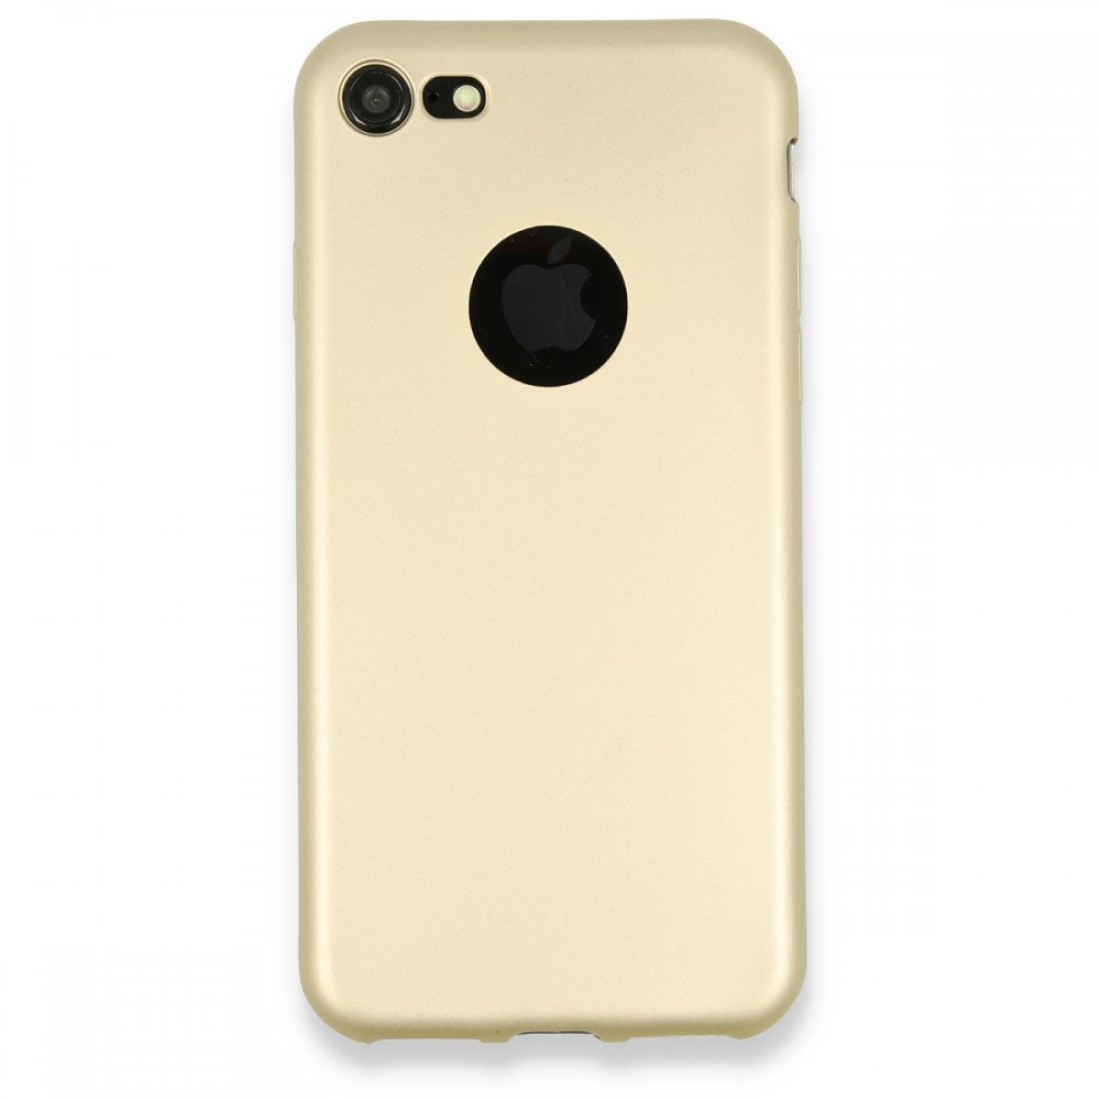 Apple iPhone 7 Kılıf Premium Rubber Silikon - Gold